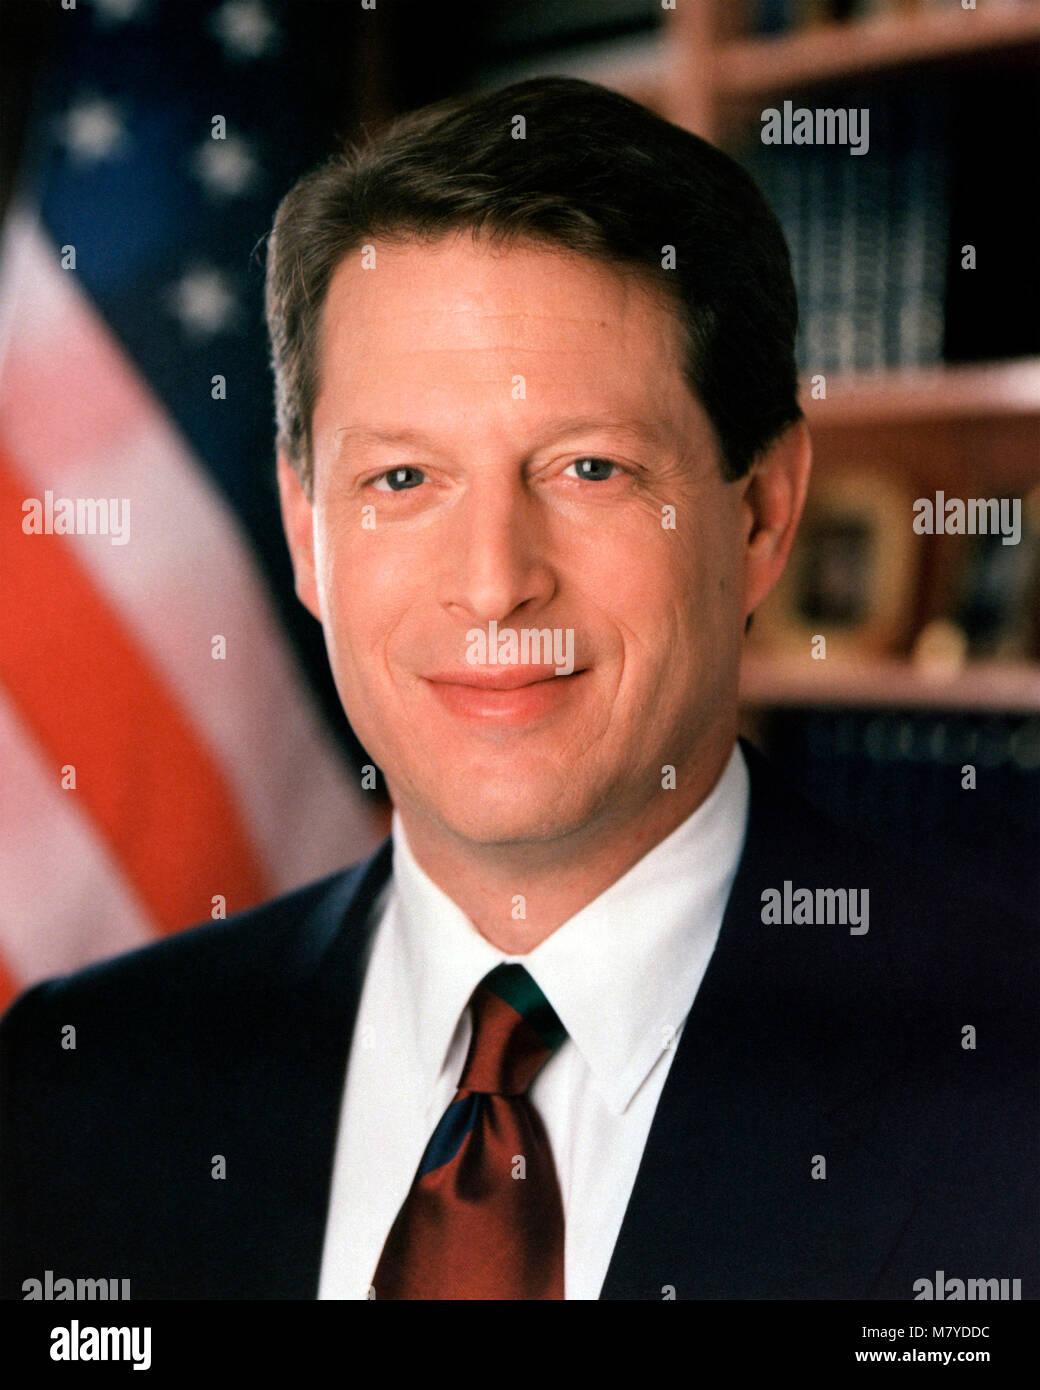 Al Gore (1948 - ). Retrato de Albert Arnold Gore Jr, quien fue vice-presidente de los Estados Unidos de Bill Clinton desde 1993-2001. Retrato oficial de gobierno, 1994. Foto de stock